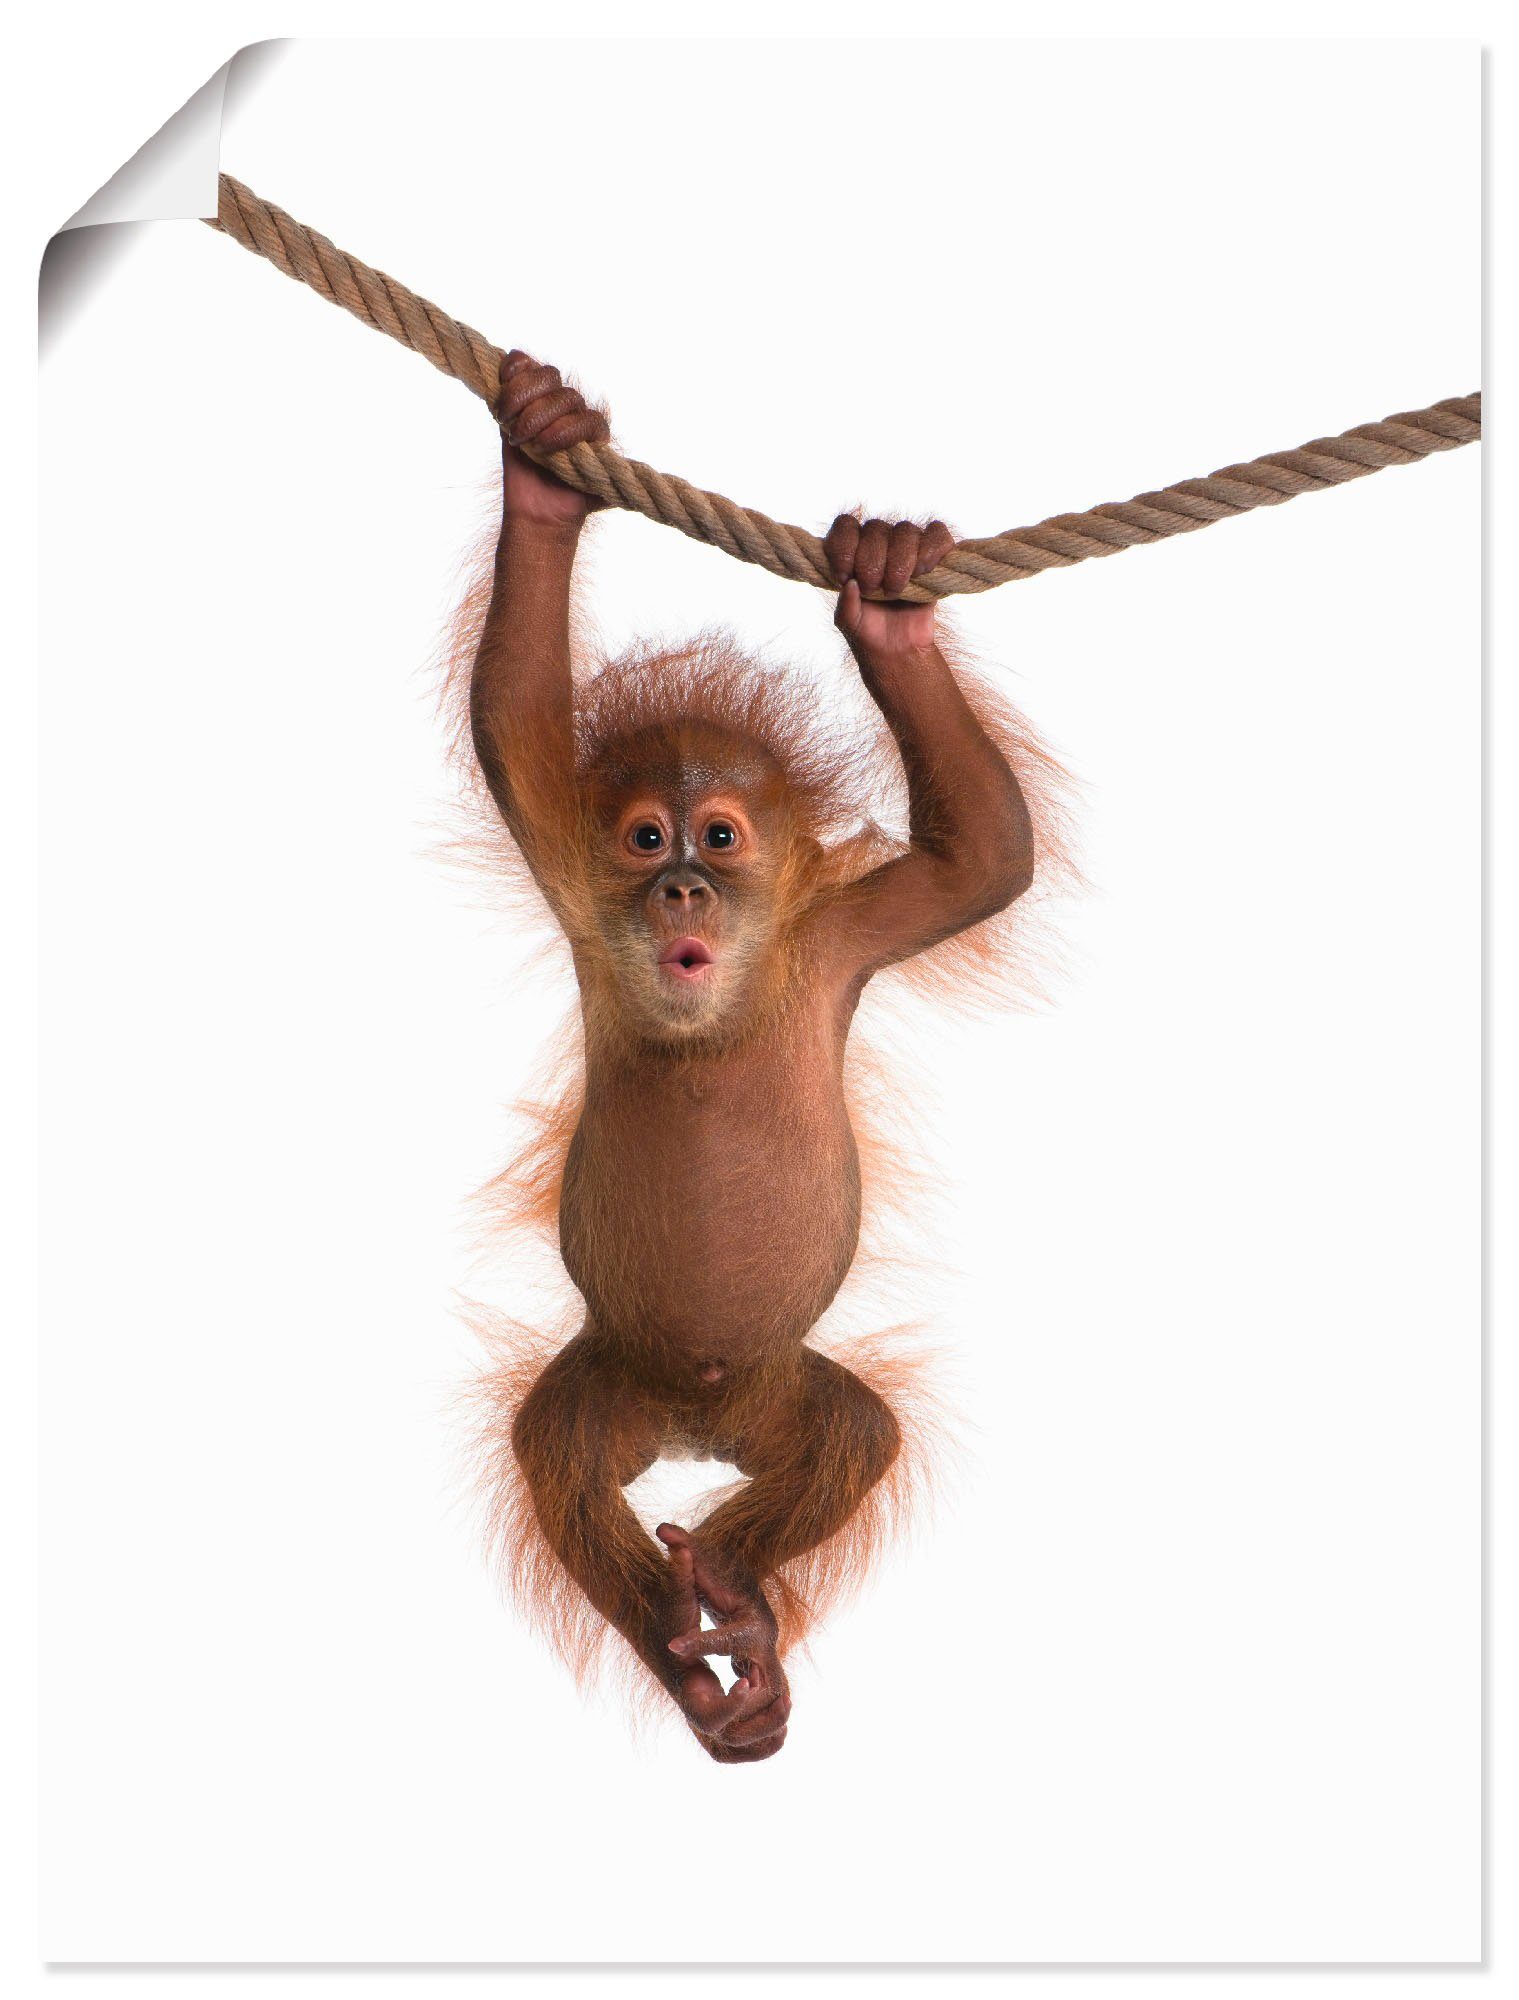 Artland Artprint Baby orang oetan hangt aan het touw II in vele afmetingen & productsoorten - artprint van aluminium / artprint voor buiten, artprint op linnen, poster, muursticker